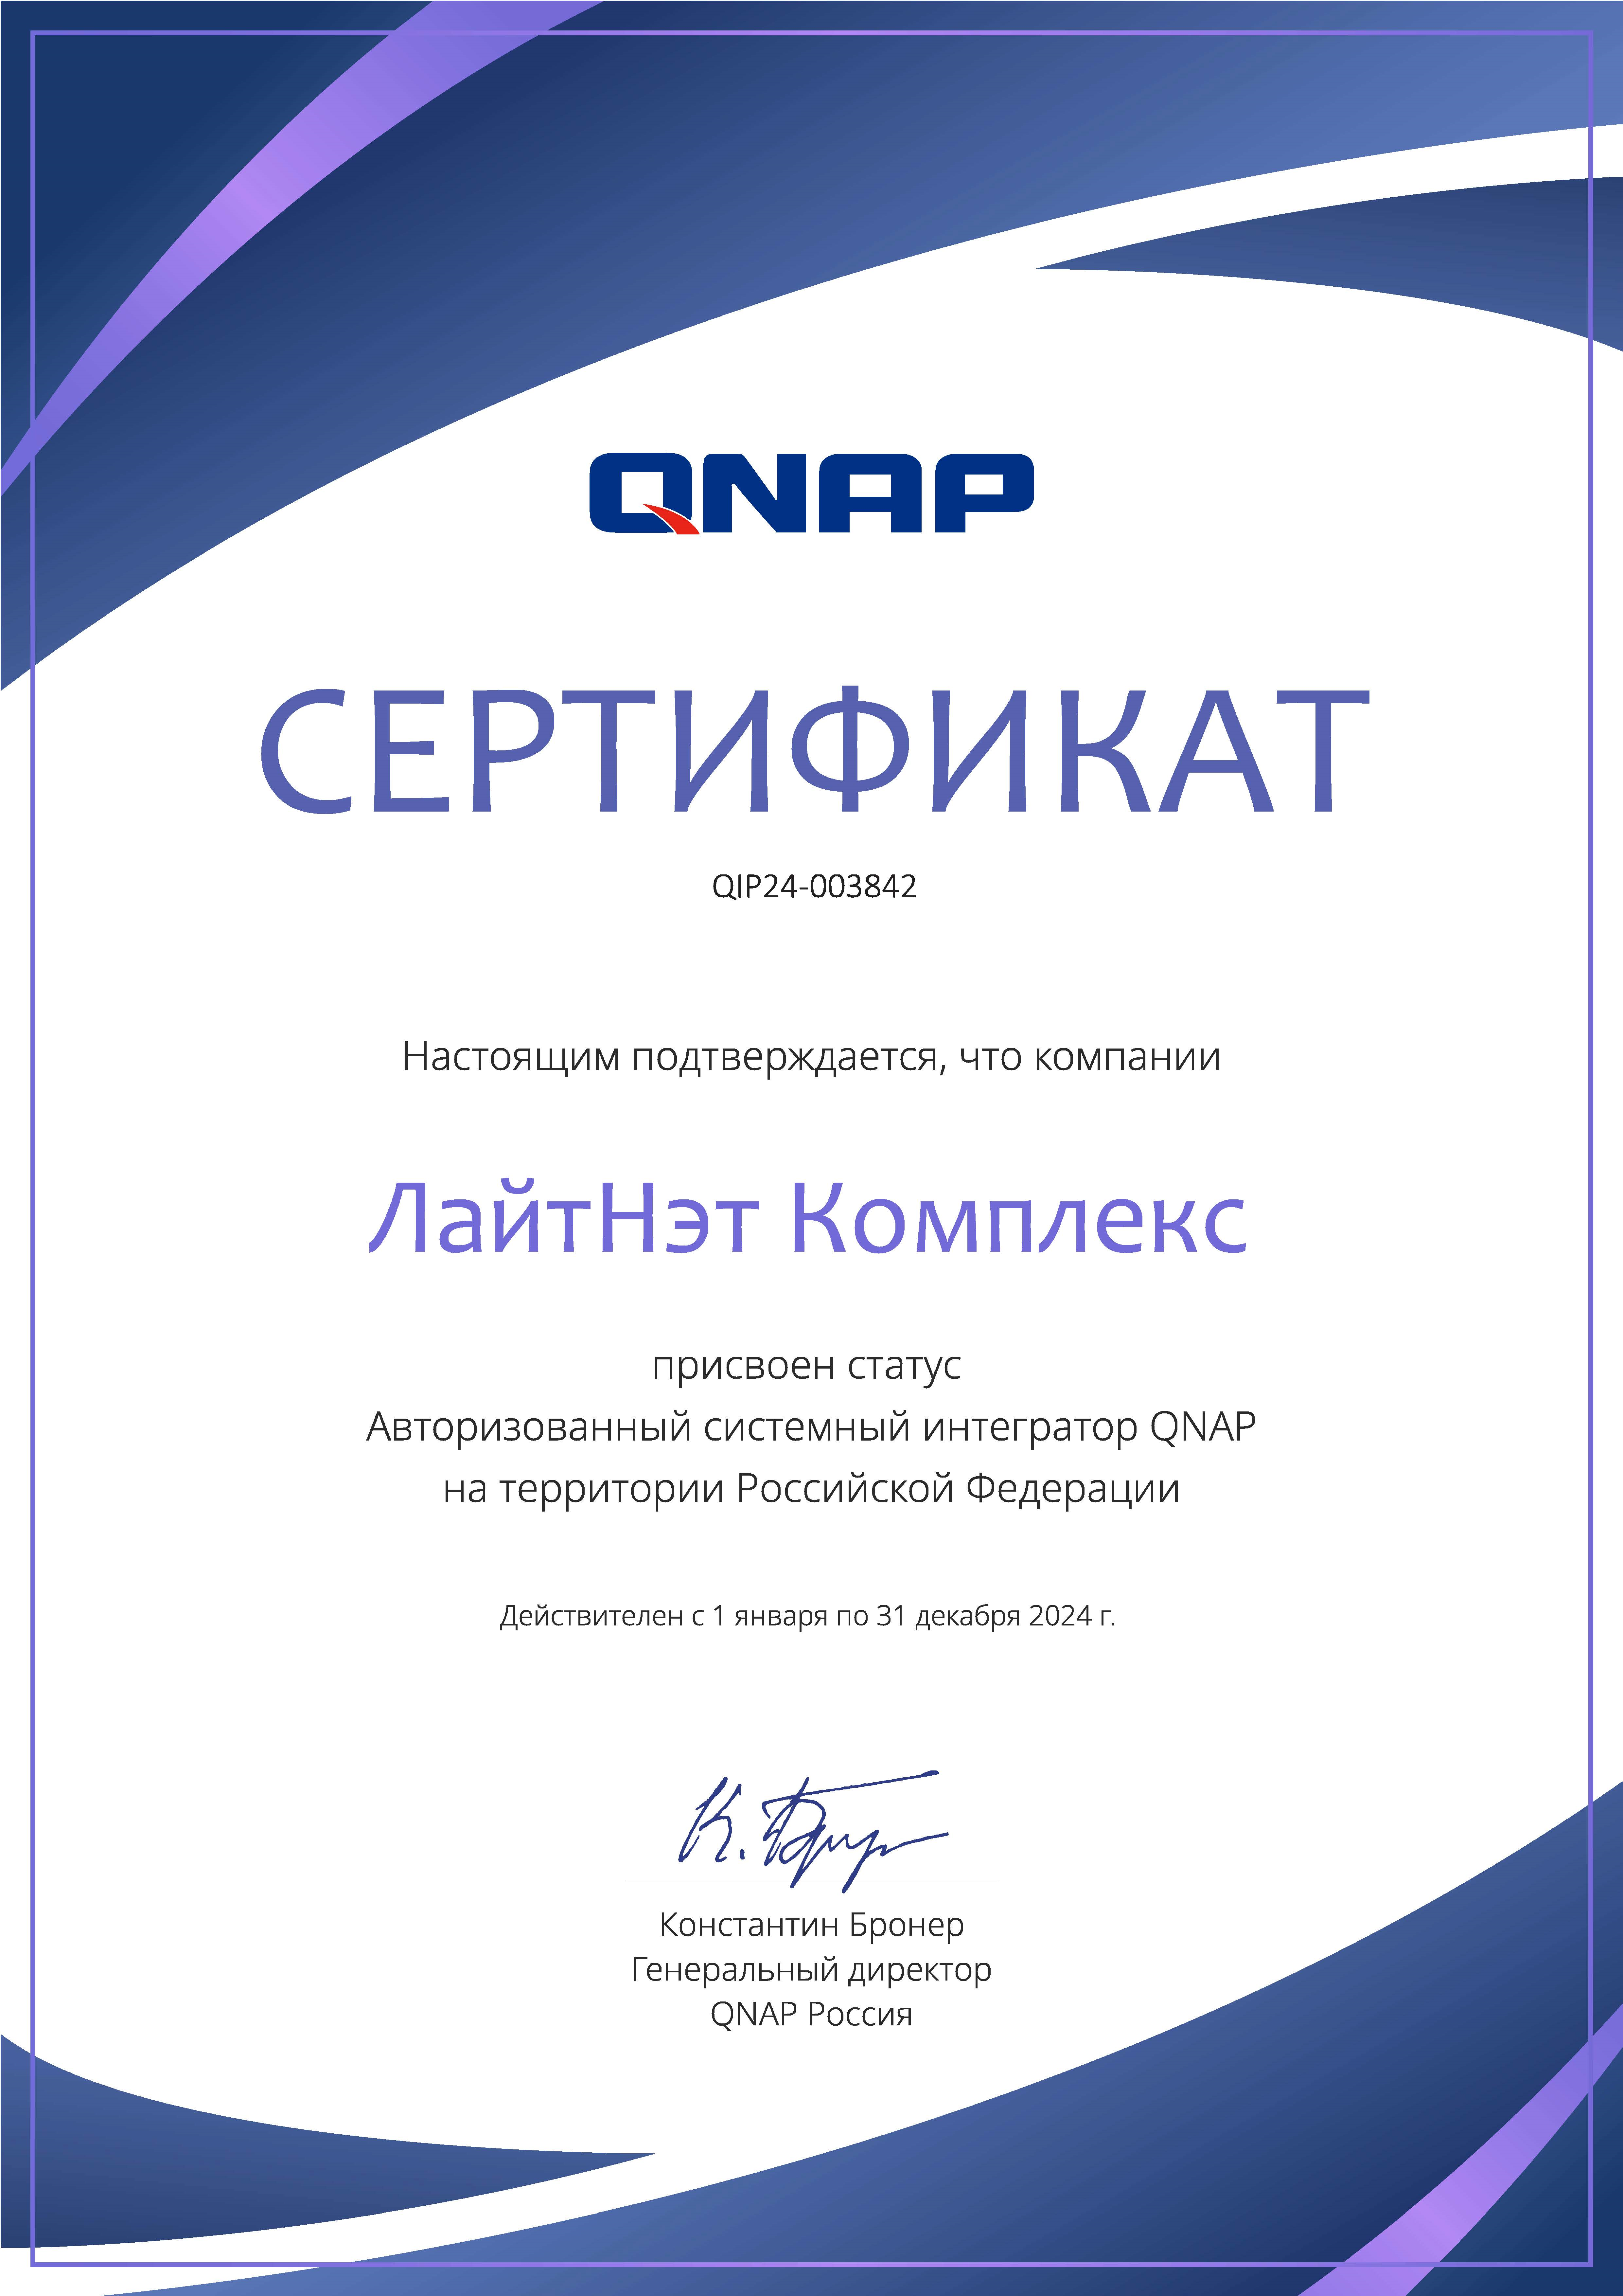 QNAP - авторизованный системный интегратор 2024